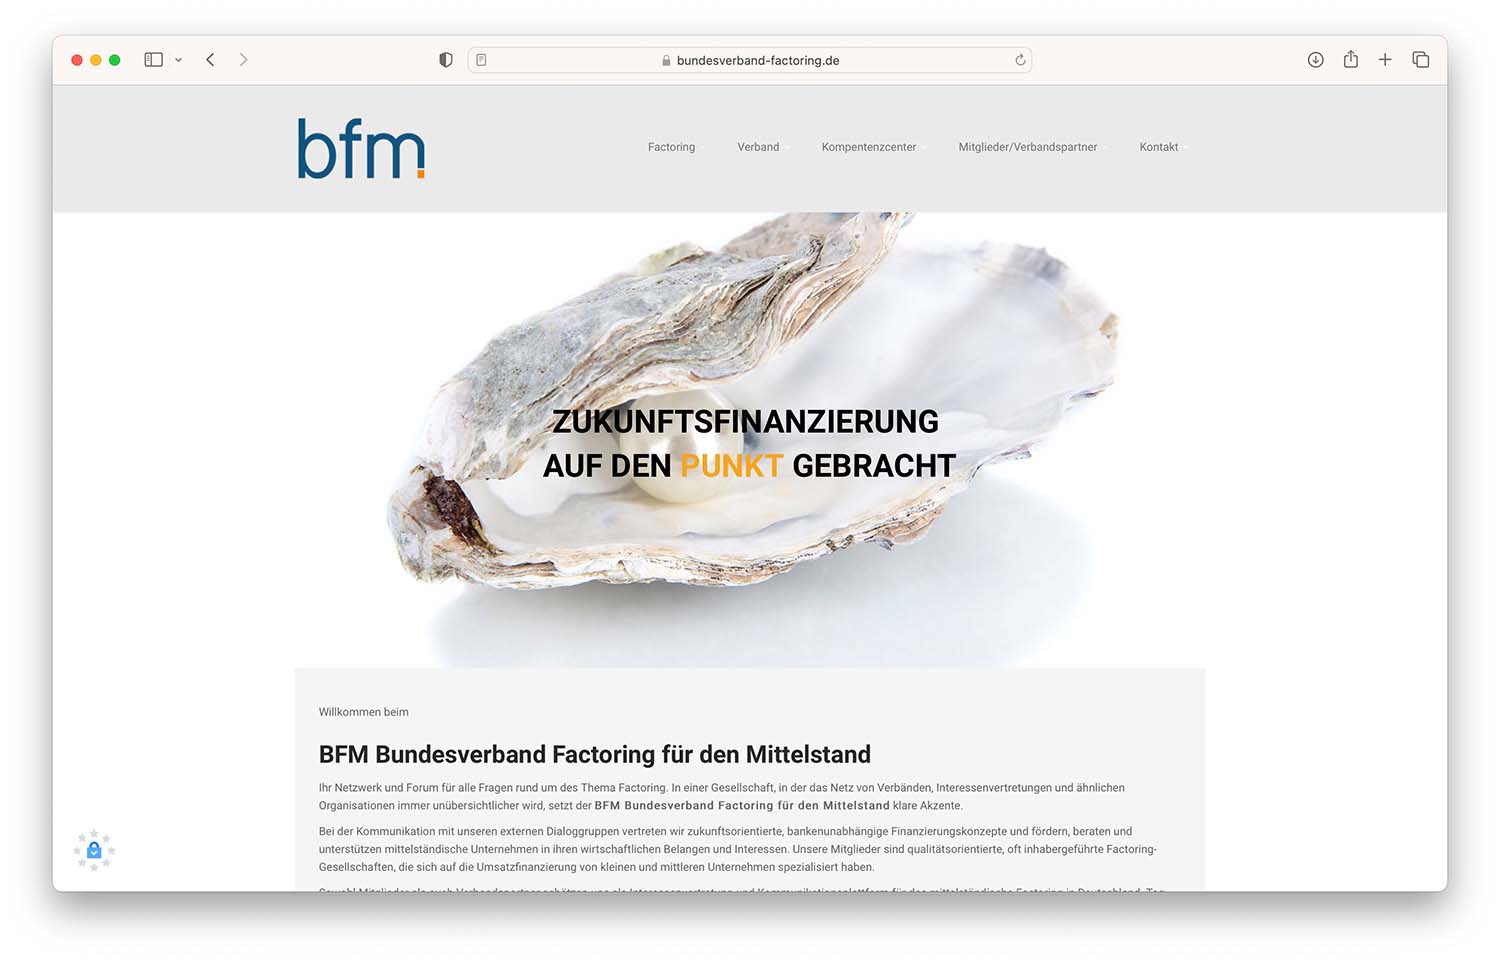 BFM Bundesverband Factoring für den Mittelstand